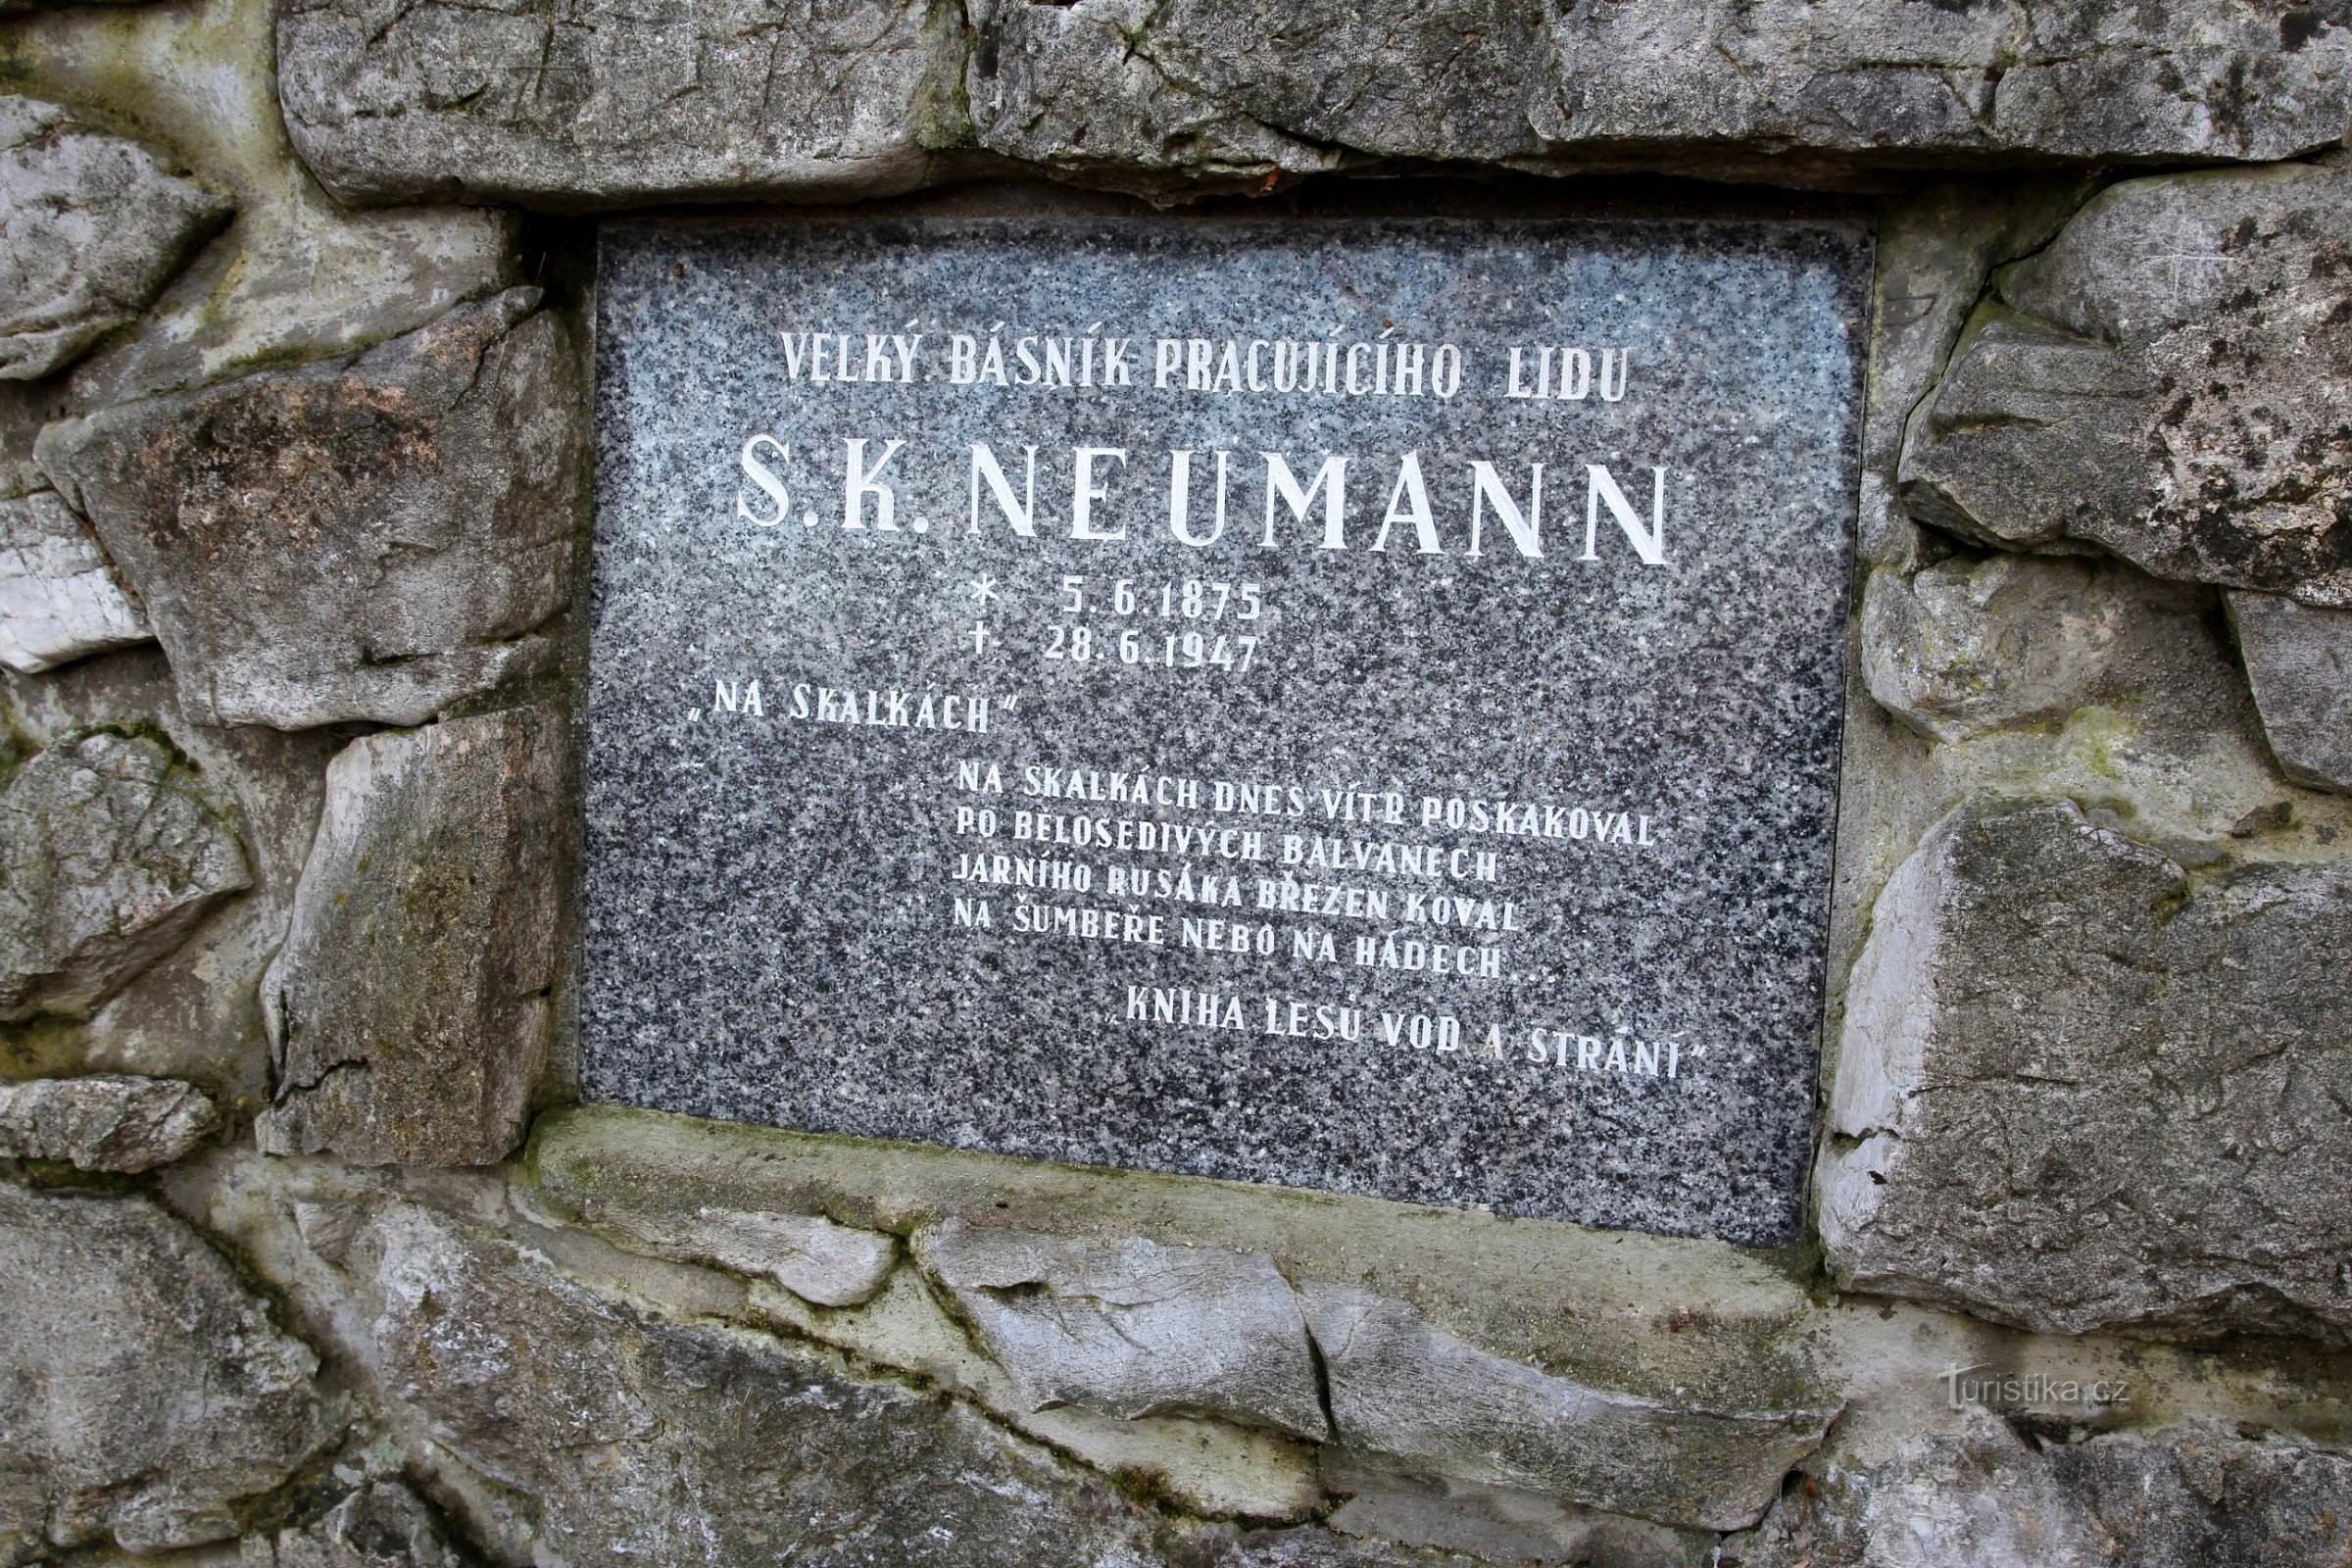 SK Neumann emlékműve